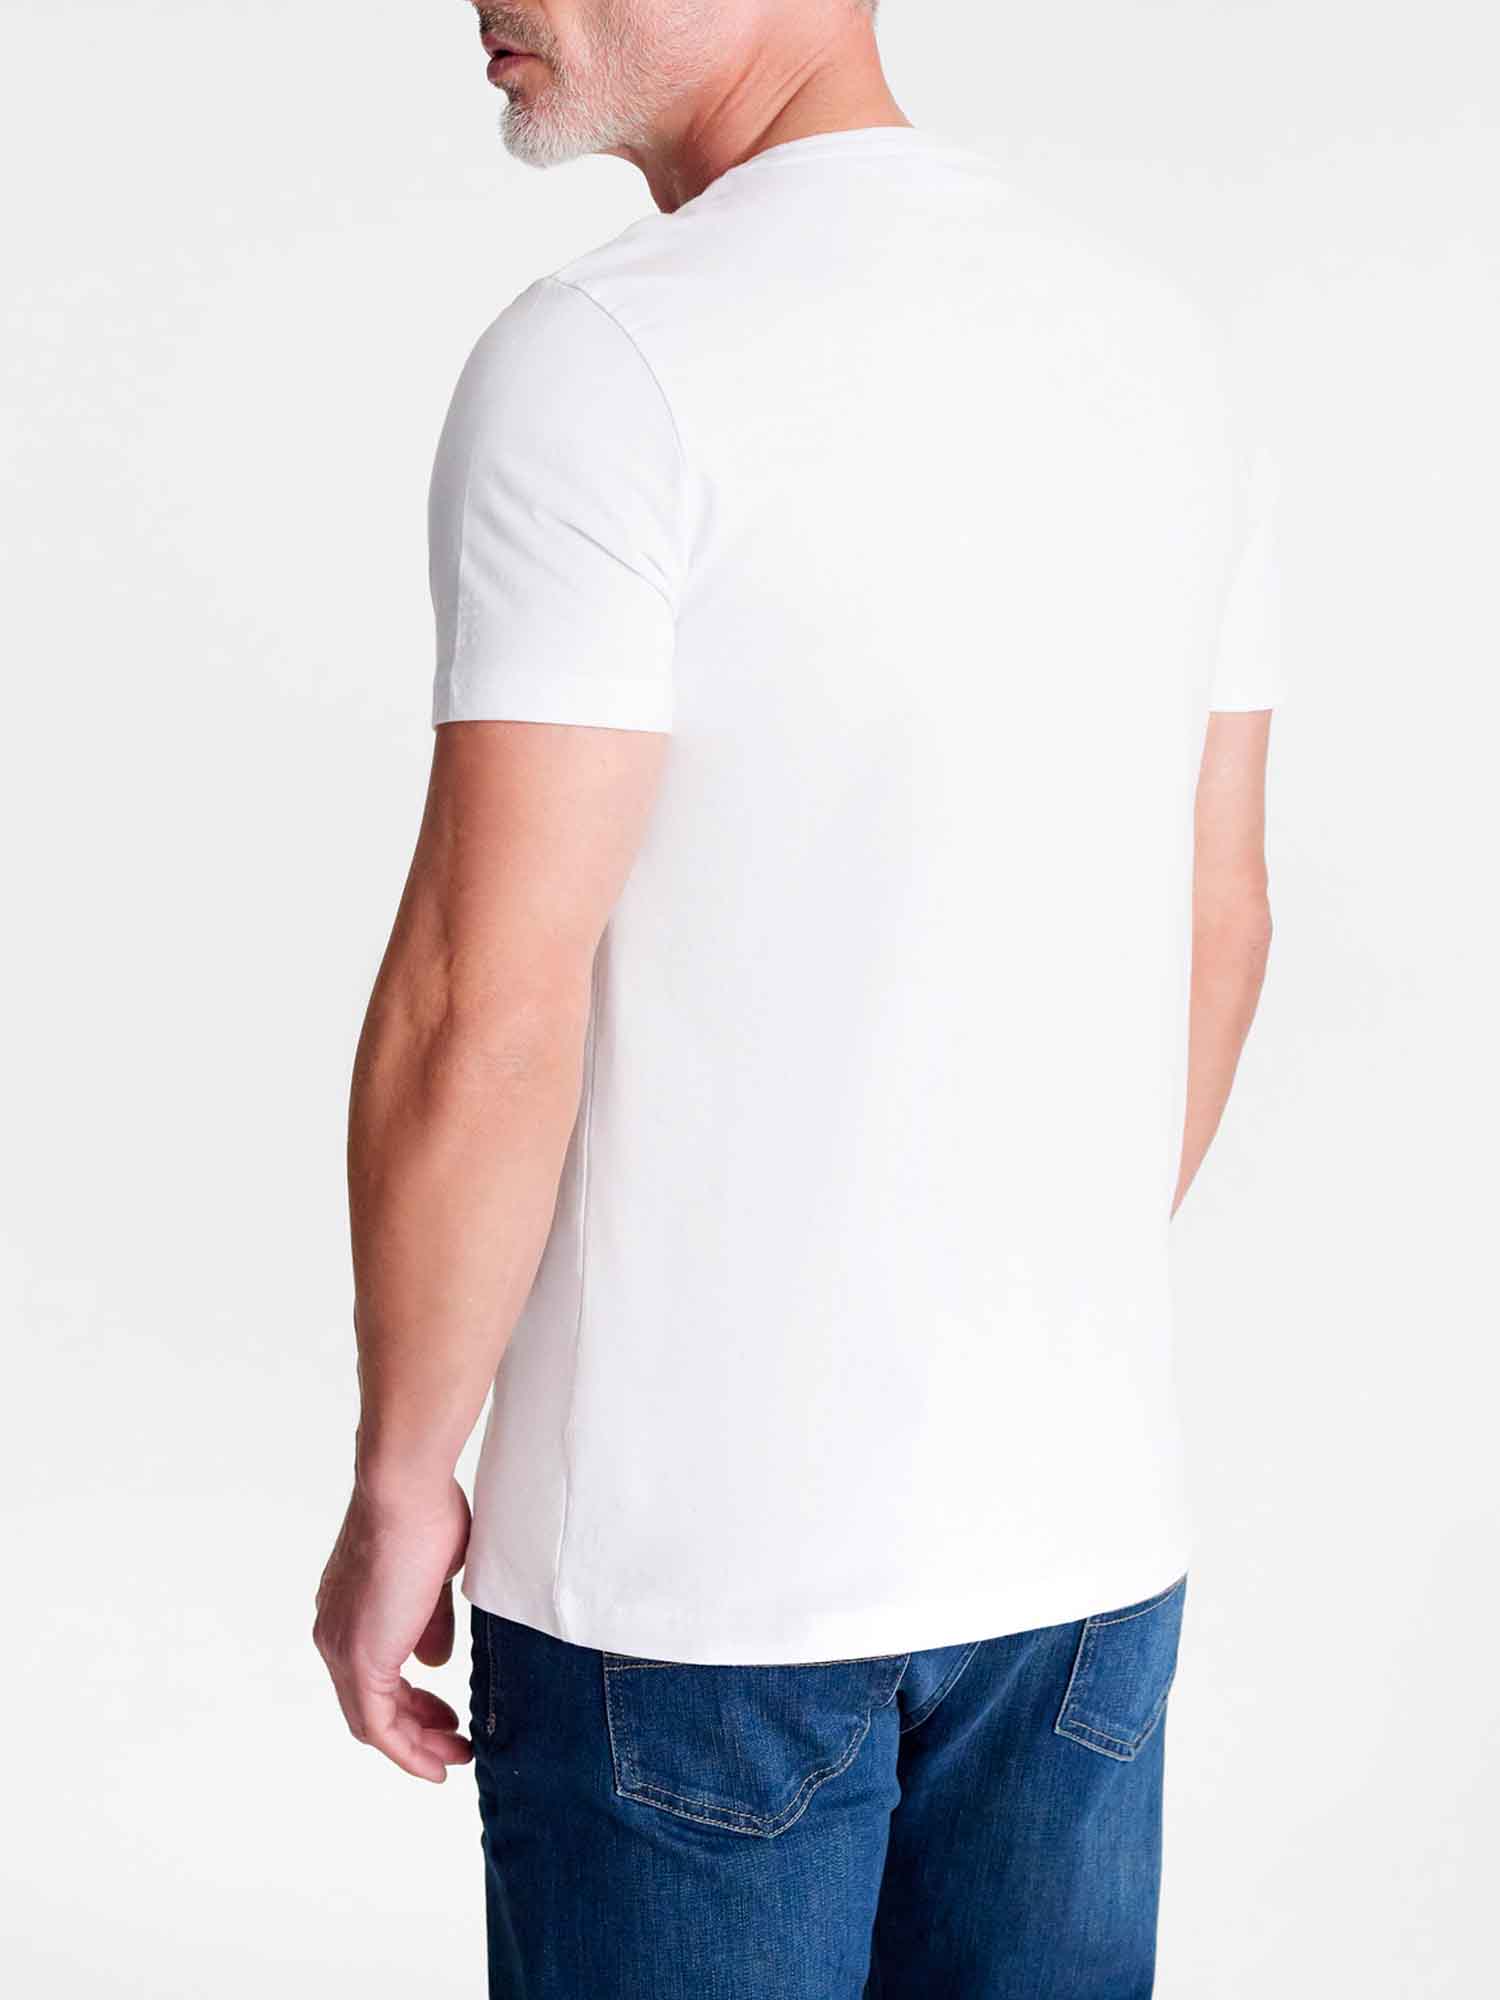 Tee-Shirt Homme Coton Biologique Blanc